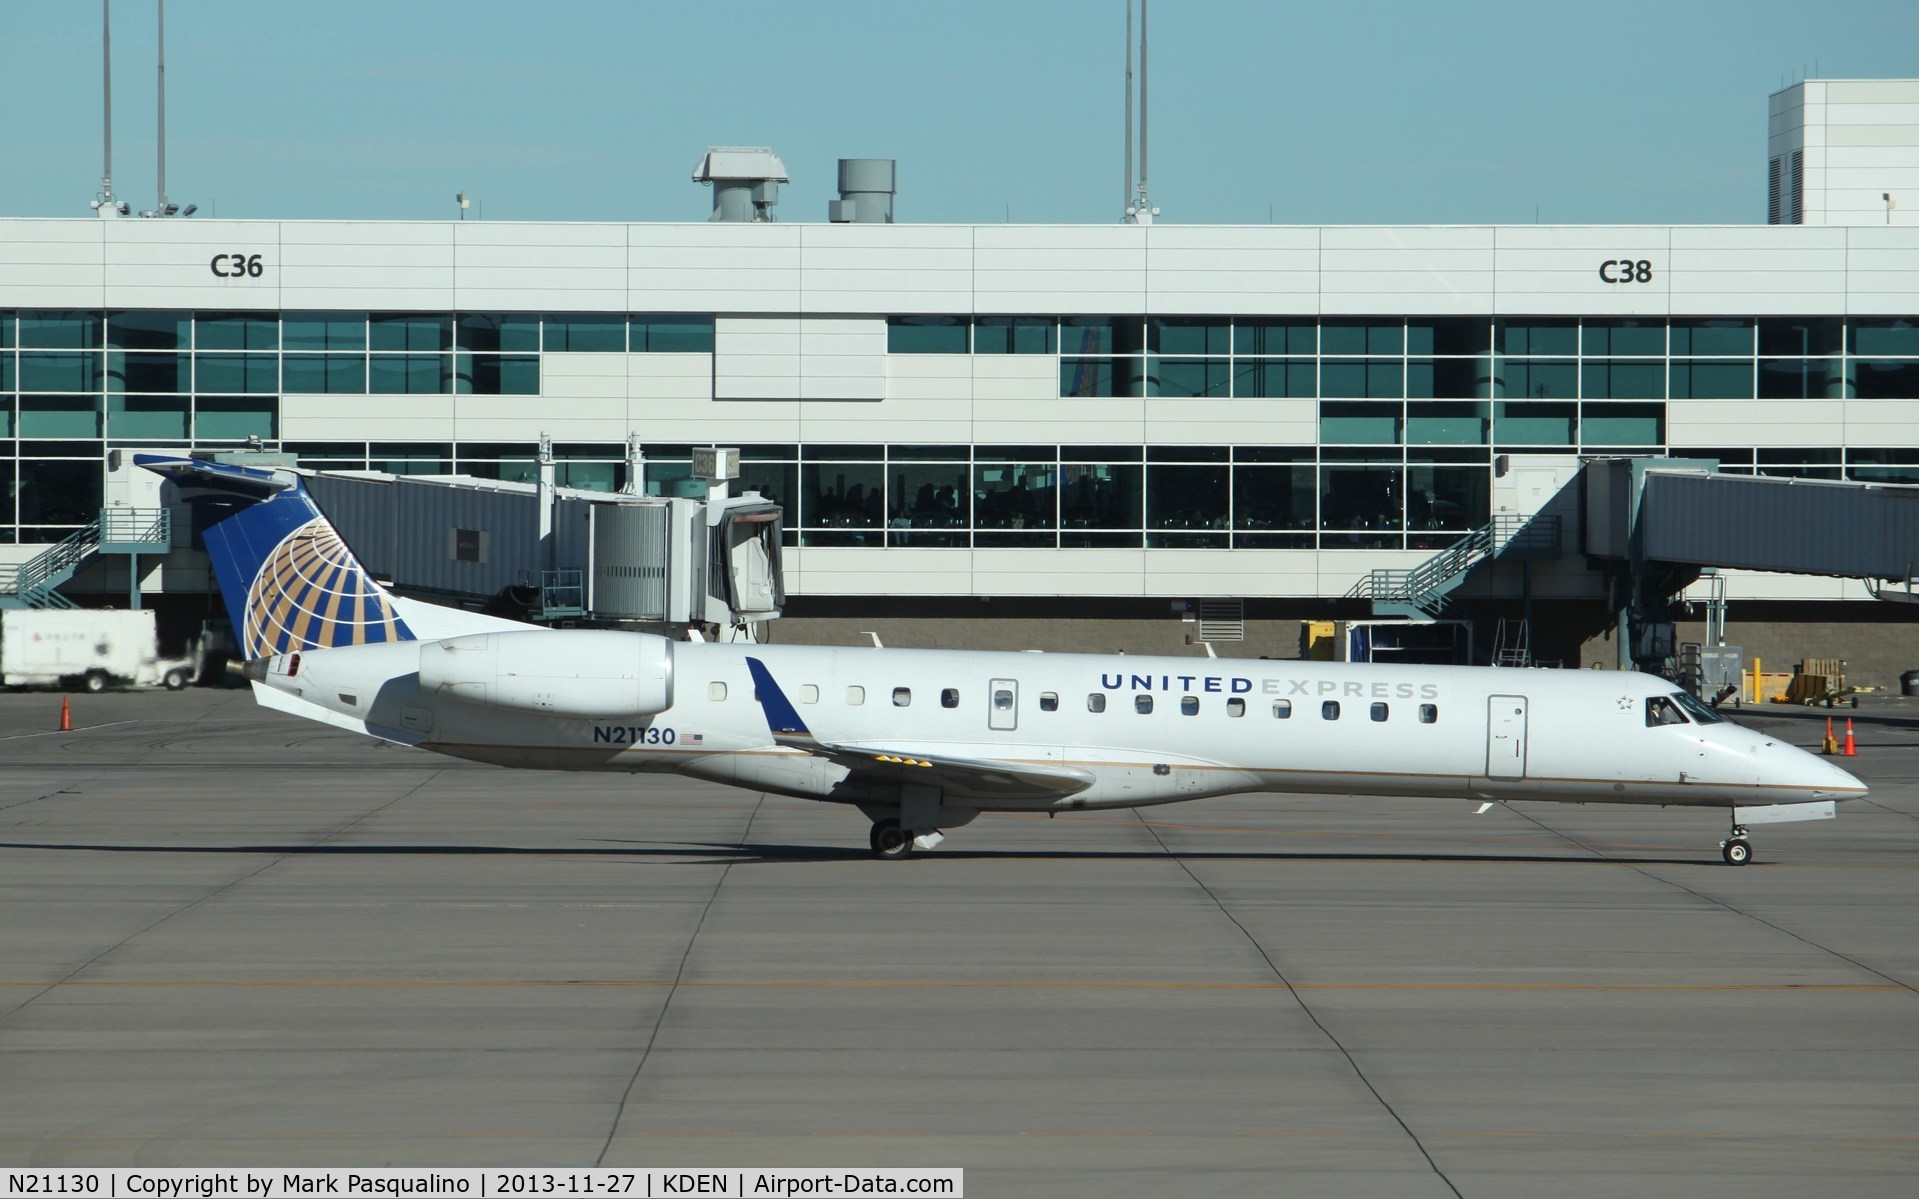 N21130, 2003 Embraer ERJ-145XR (EMB-145XR) C/N 145704, EMB-145XR